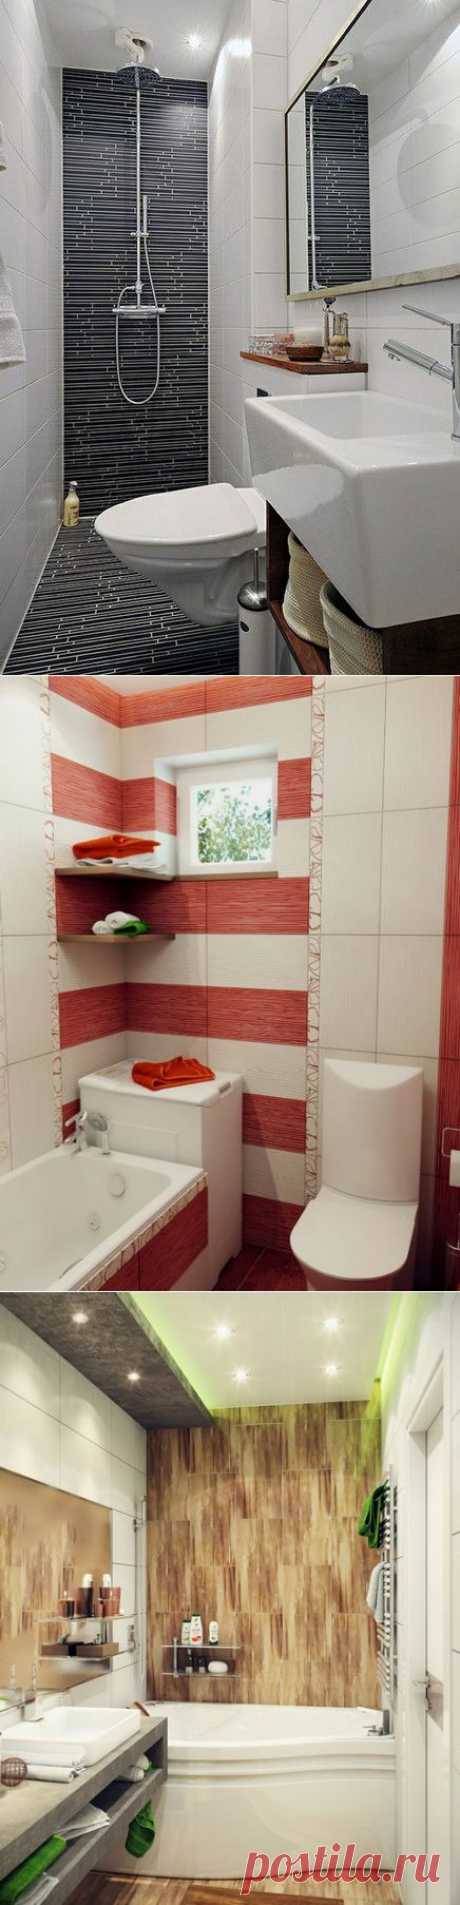 Дизайн малогабаритной ванной комнаты | Ваш Дом